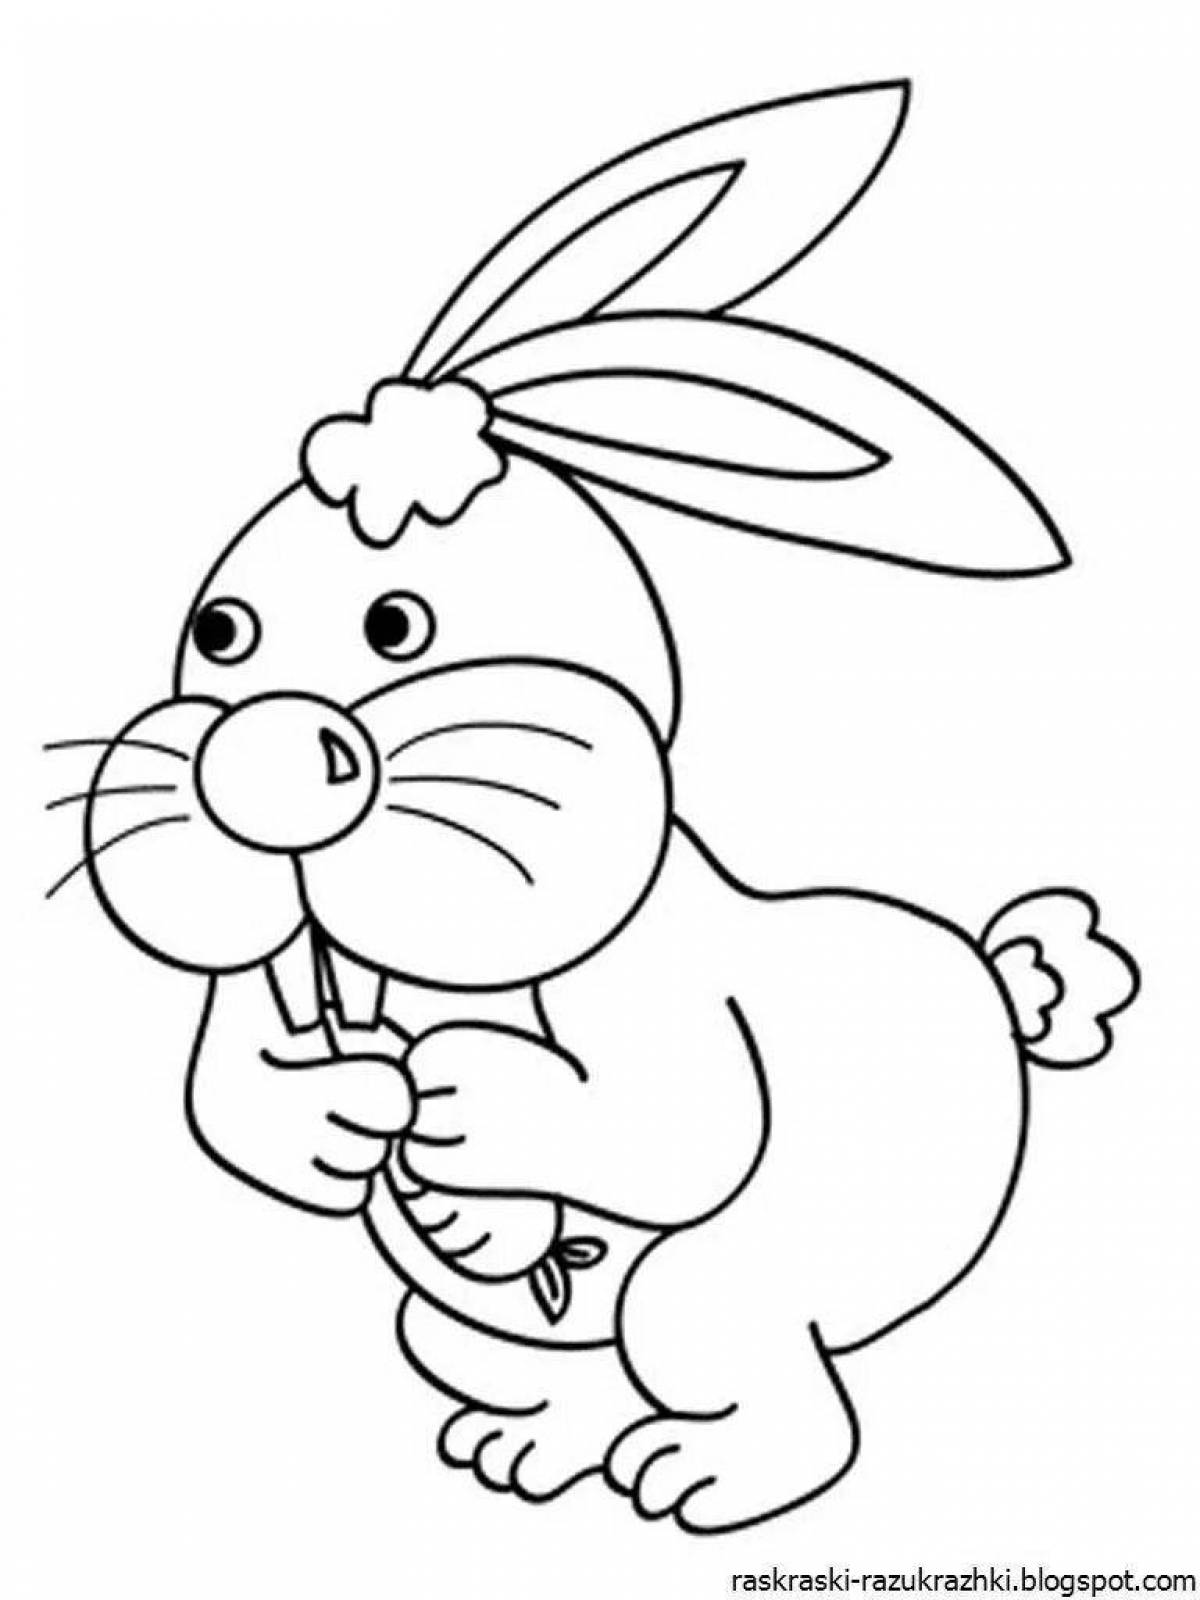 Раскраска сказочный заяц для детей